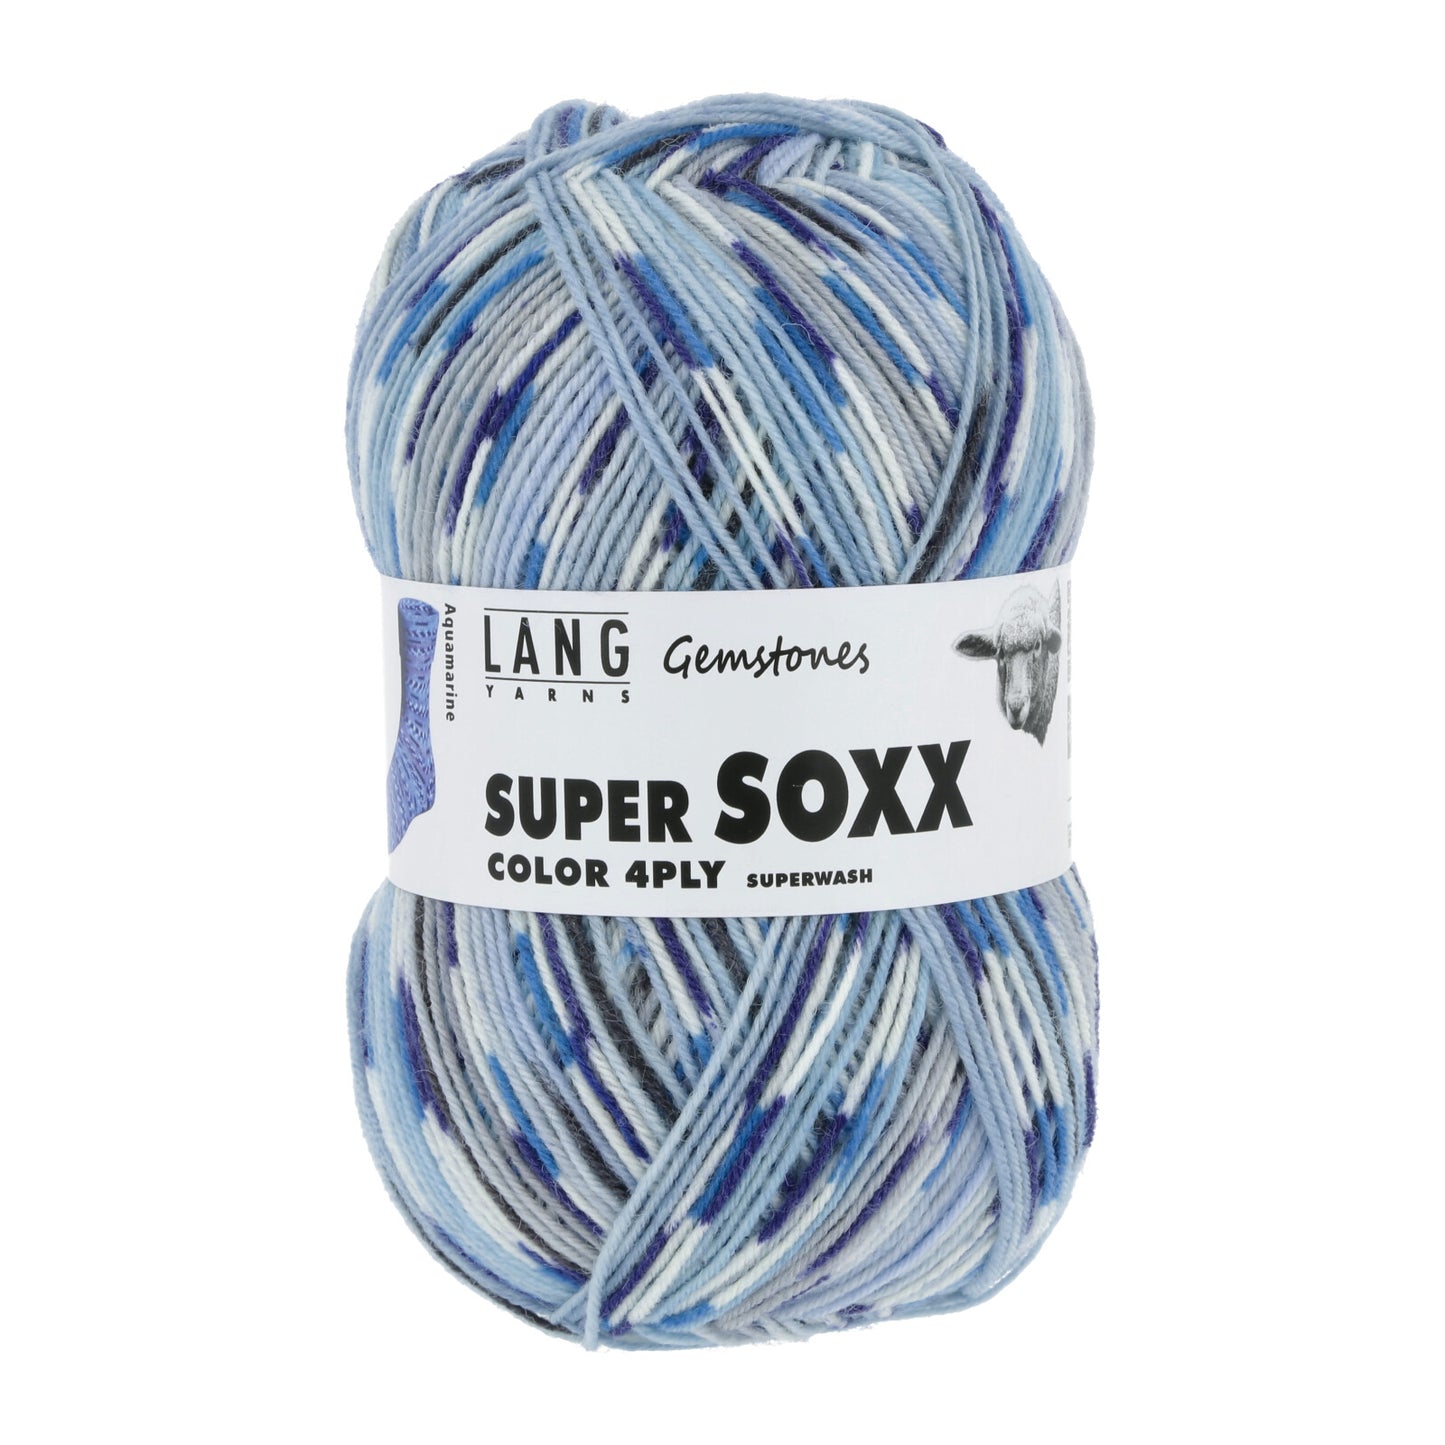 Super Soxx Color 4-fädig